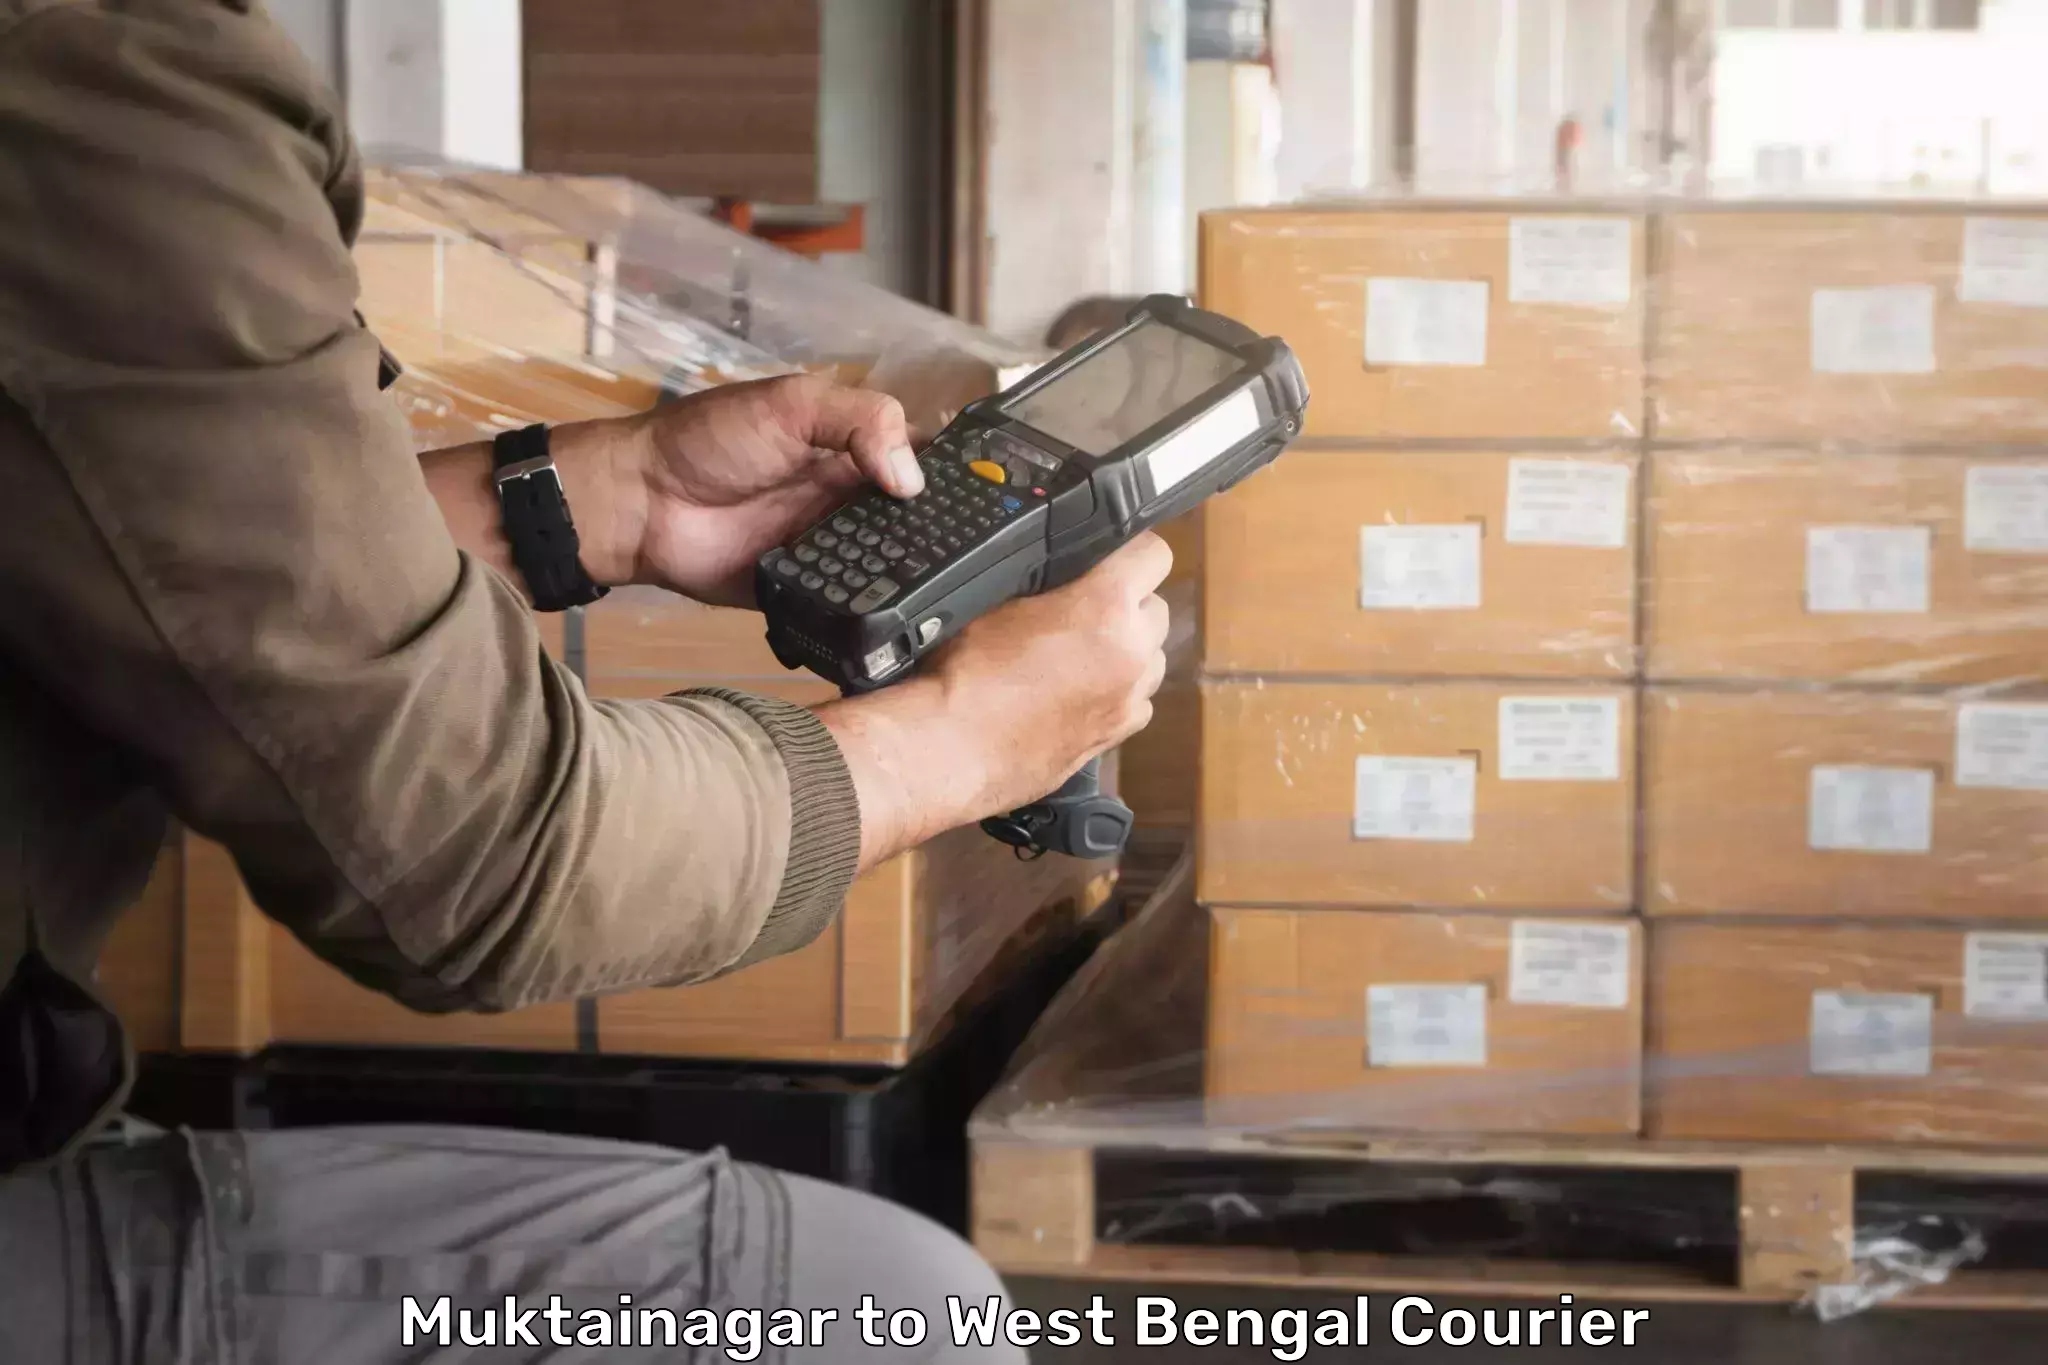 Courier tracking online Muktainagar to Haldia port